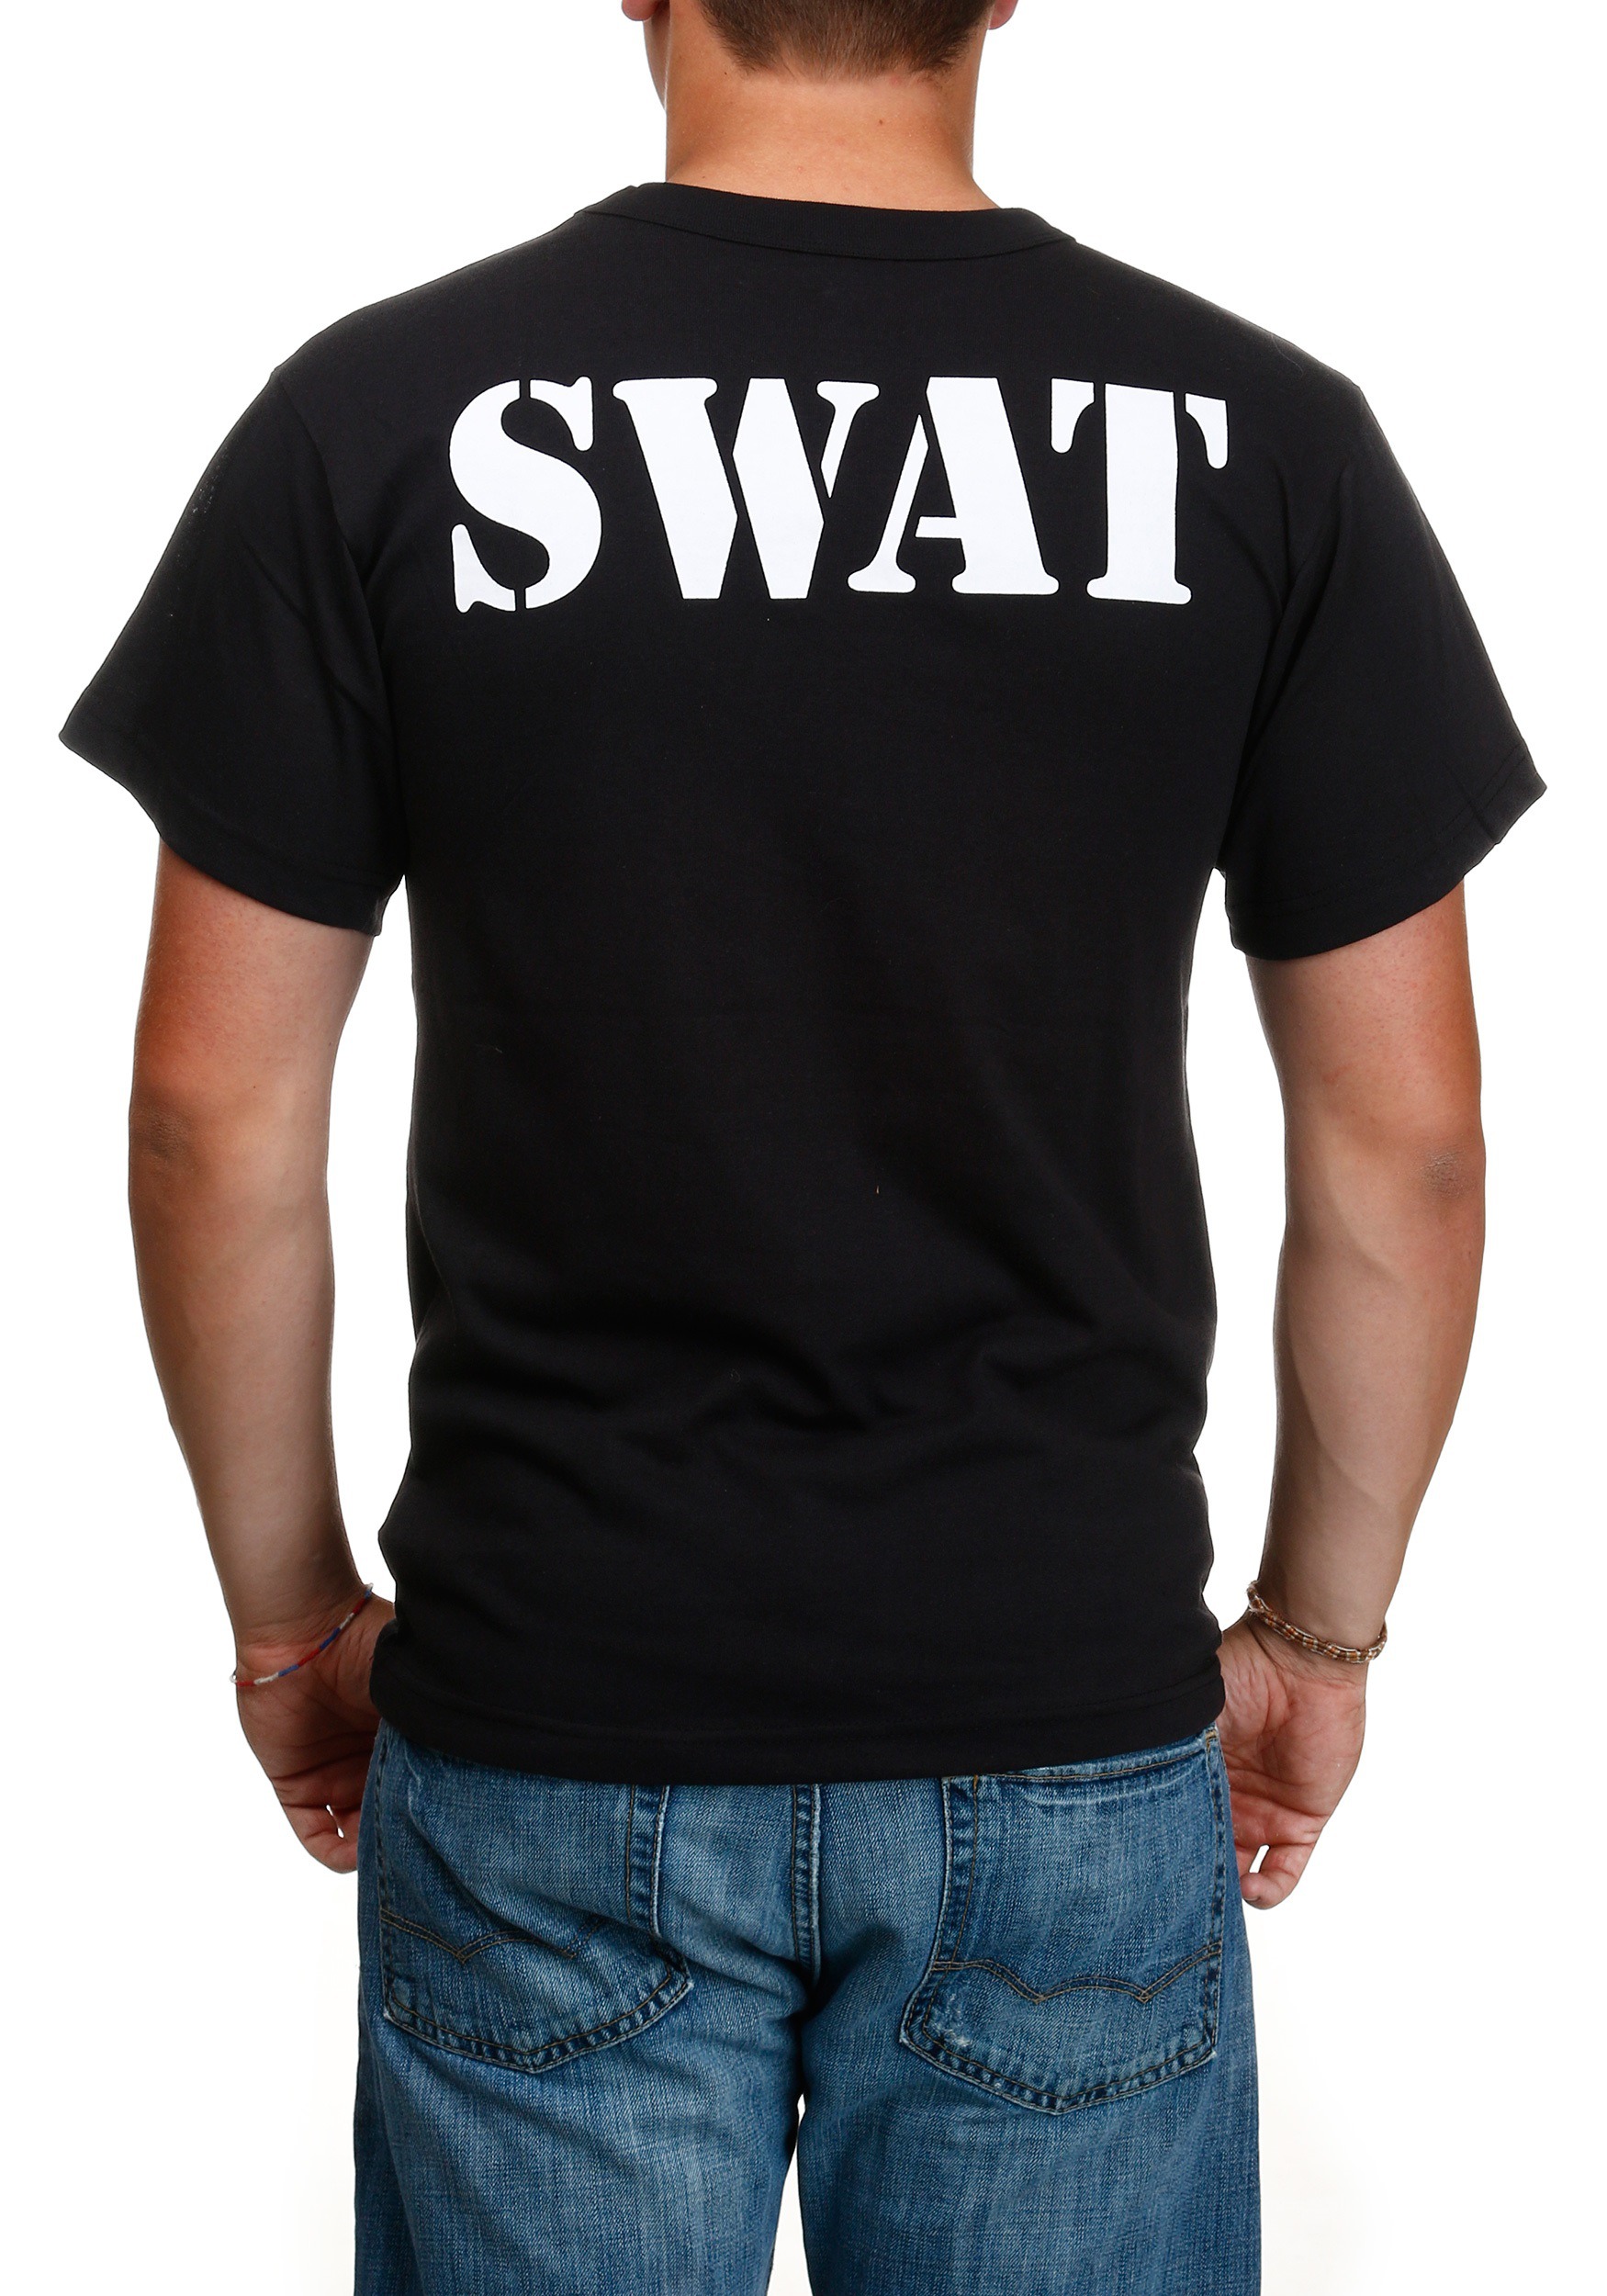 Camiseta Black Swat para adultos Multicolor Colombia